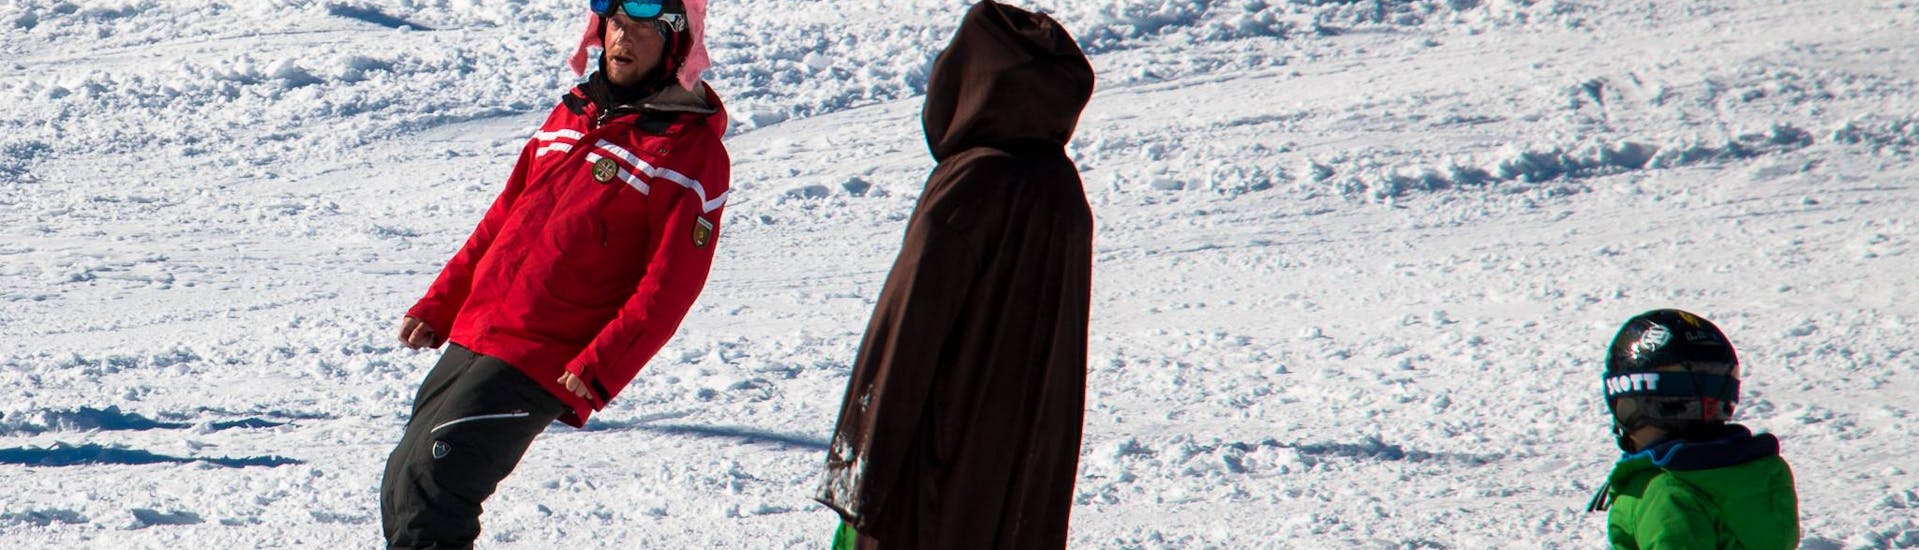 Clases de snowboard privadas a partir de 5 años para todos los niveles.